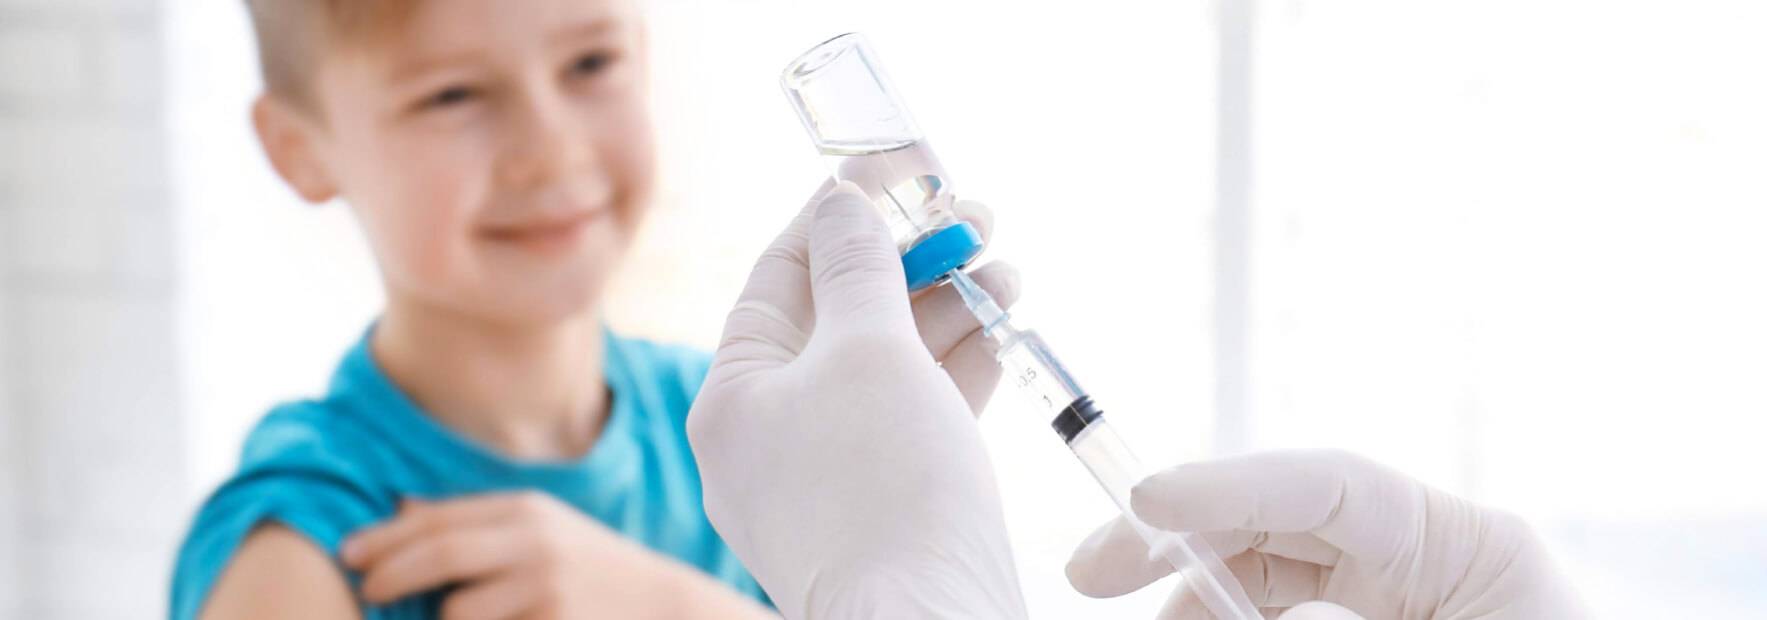 programma pre e post vaccinazioni